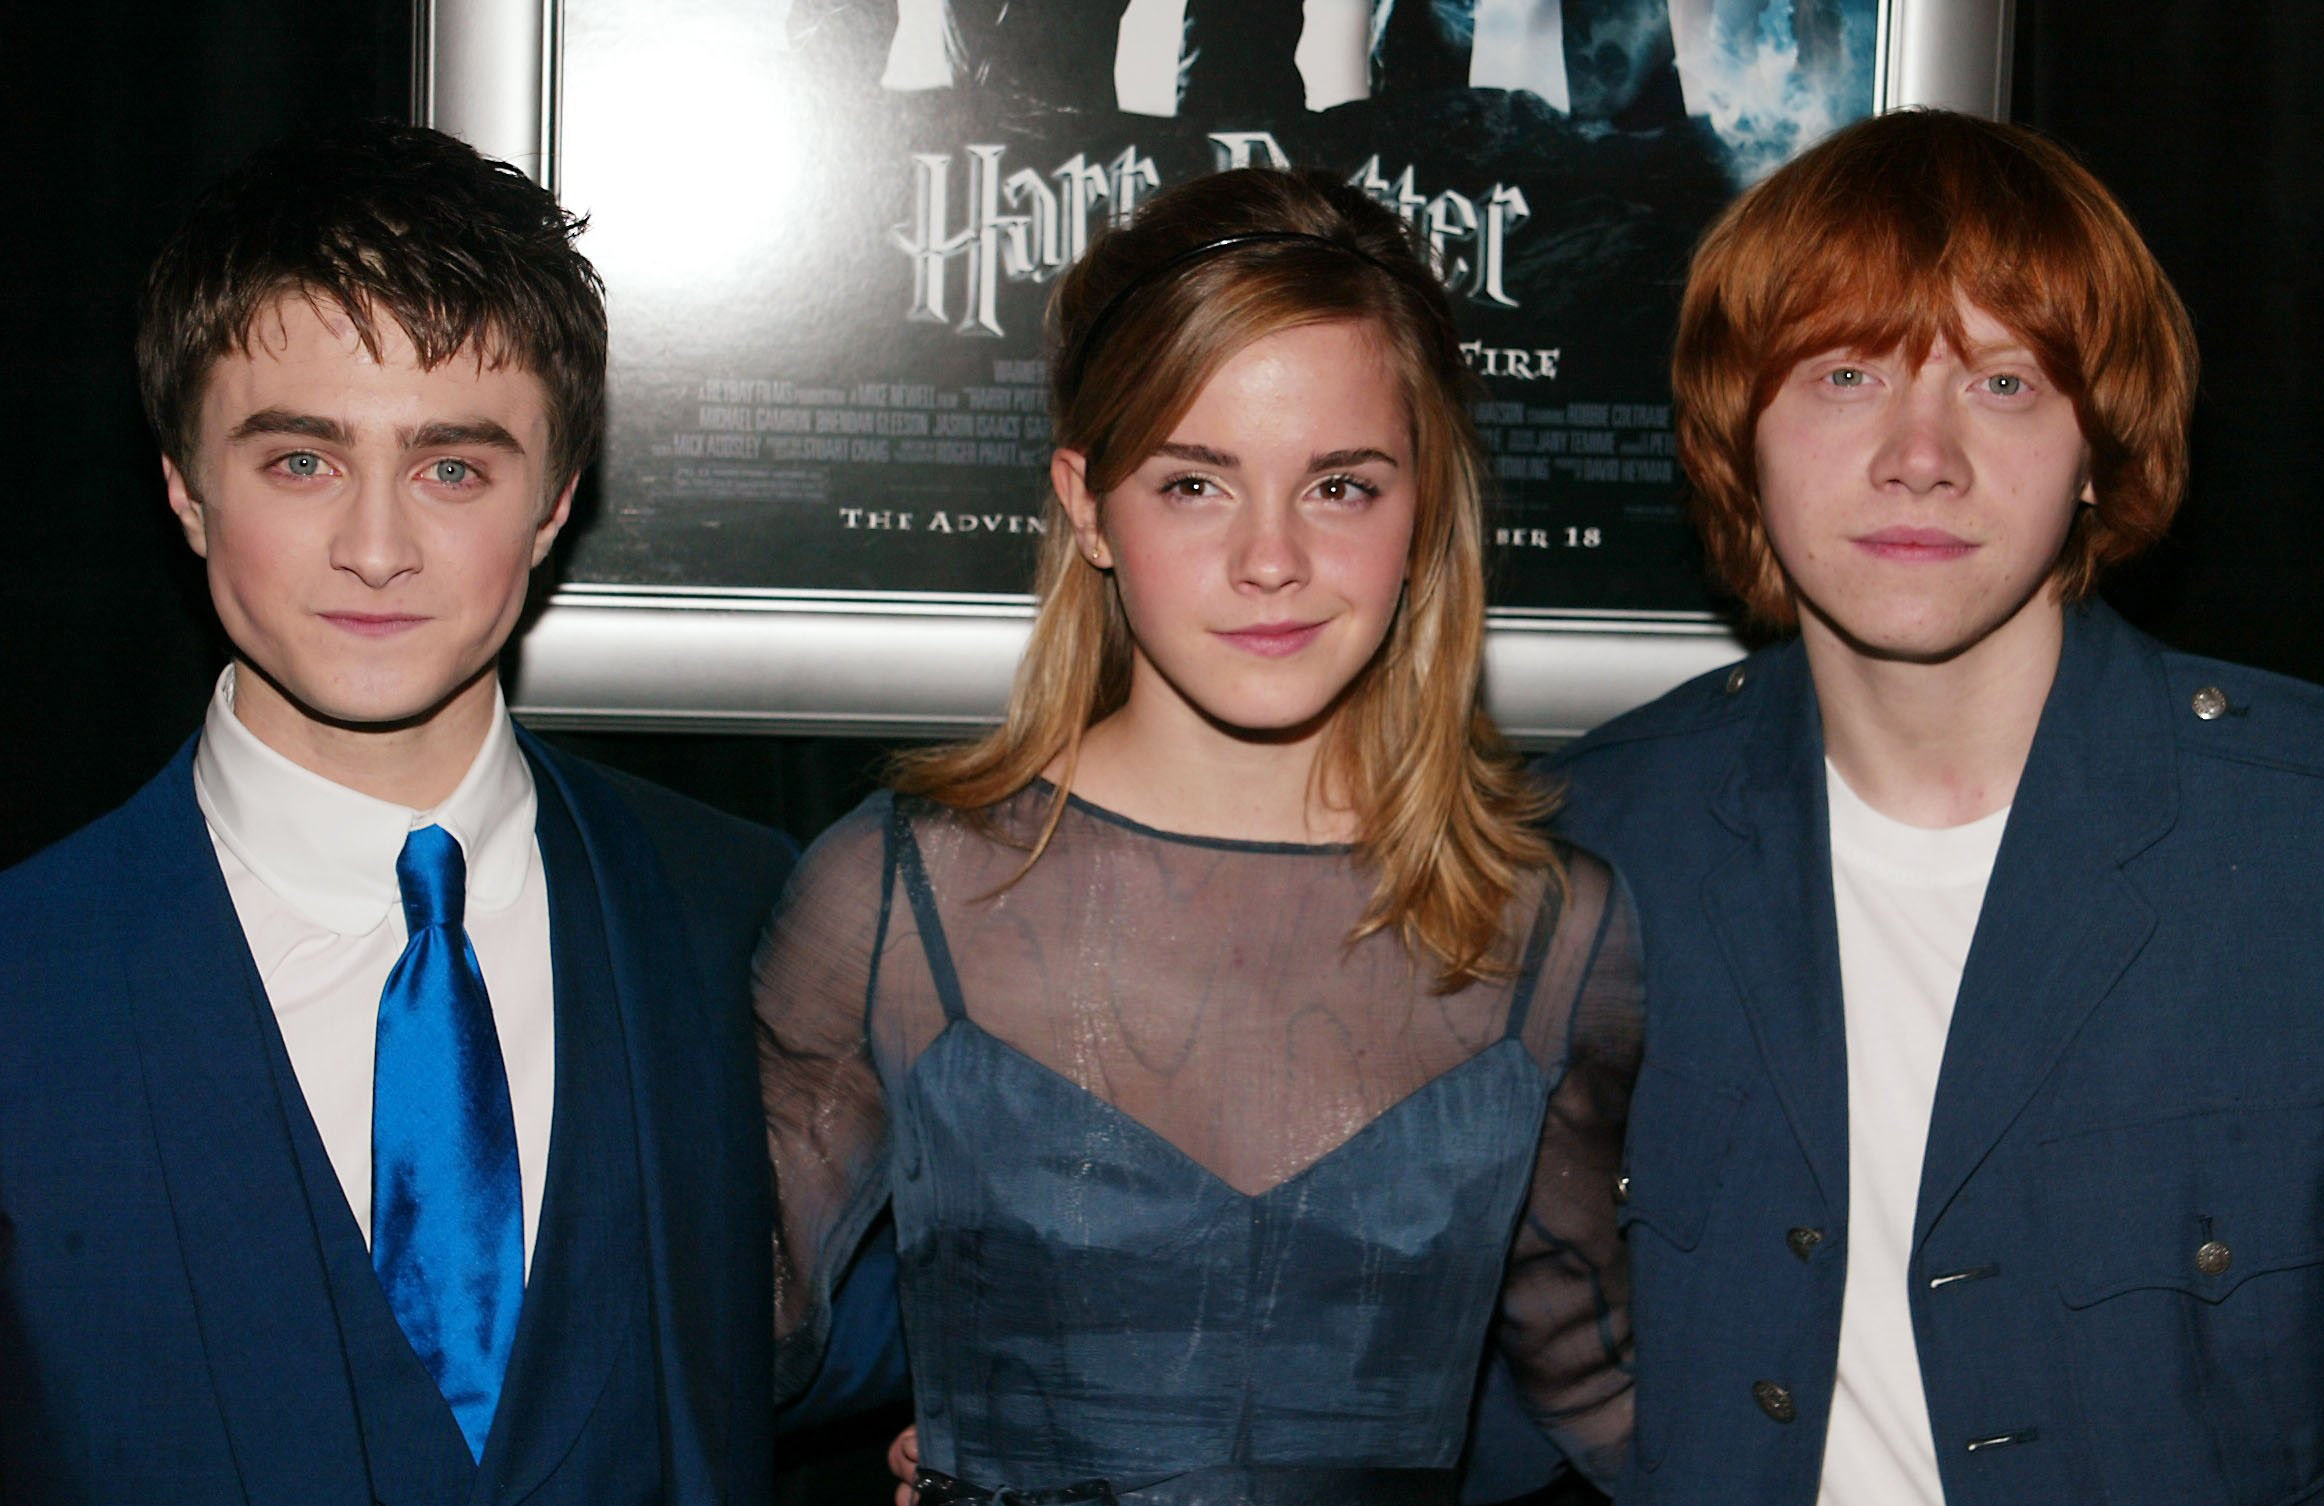 Daniel Radcliffe, Emma Watson y Rupert Grint en el estreno de "Harry Potter and the Goblet of Fire" en Nueva York, el 12 de noviembre de 2005. | Foto: Getty Images